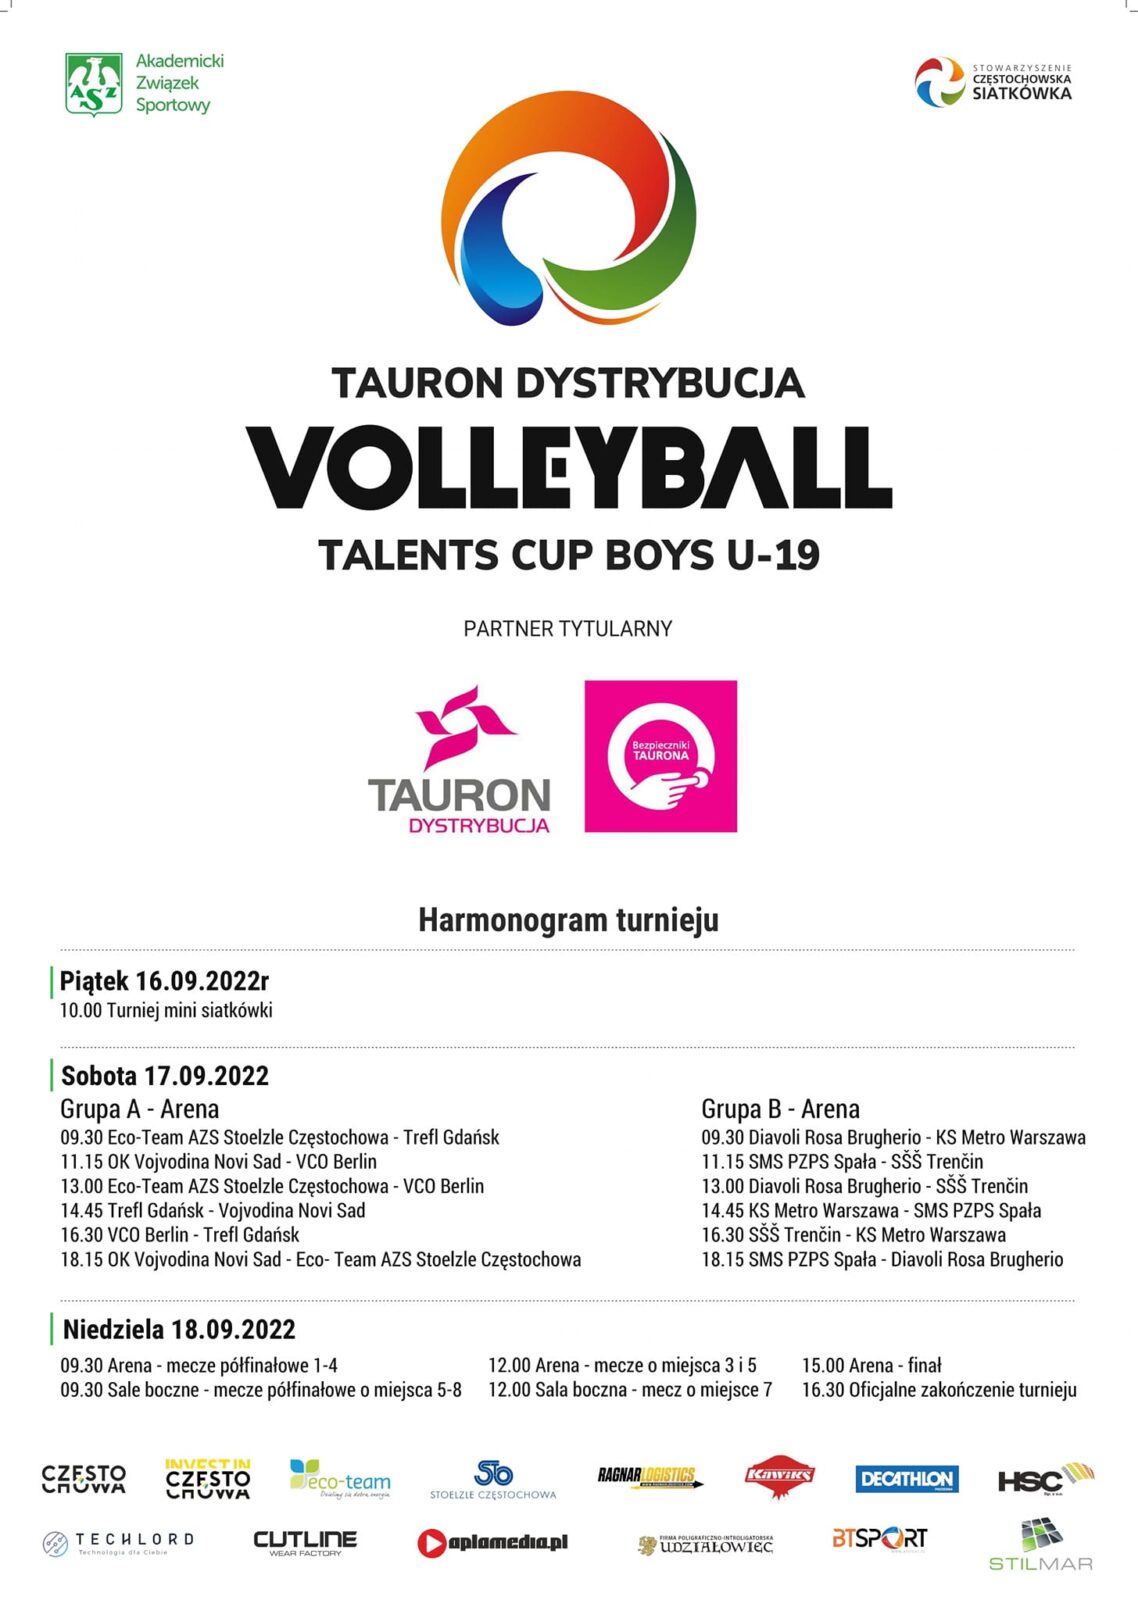 W Częstochowie odbędzie się międzynarodowy siatkarski turniej Tauron Dystrybucja Volleyball Talents Cup Boys U-19 1